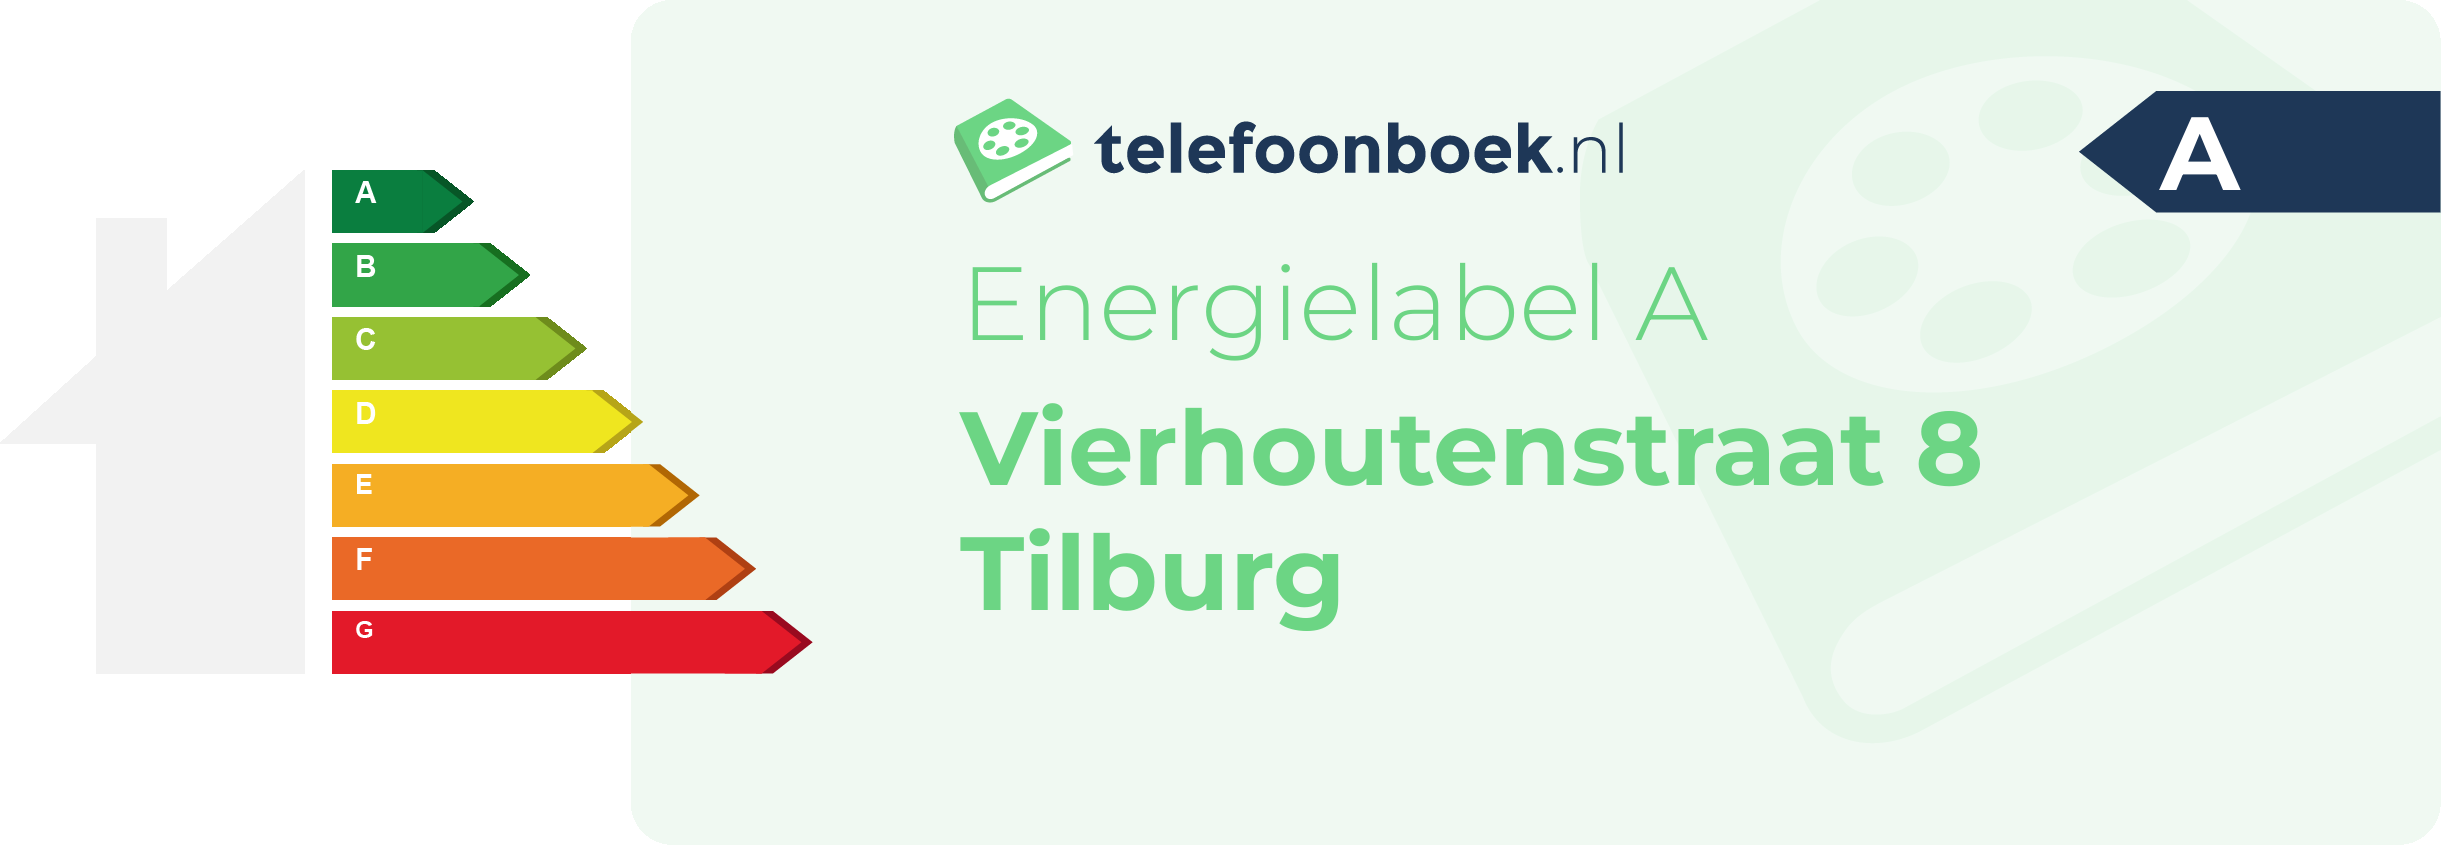 Energielabel Vierhoutenstraat 8 Tilburg